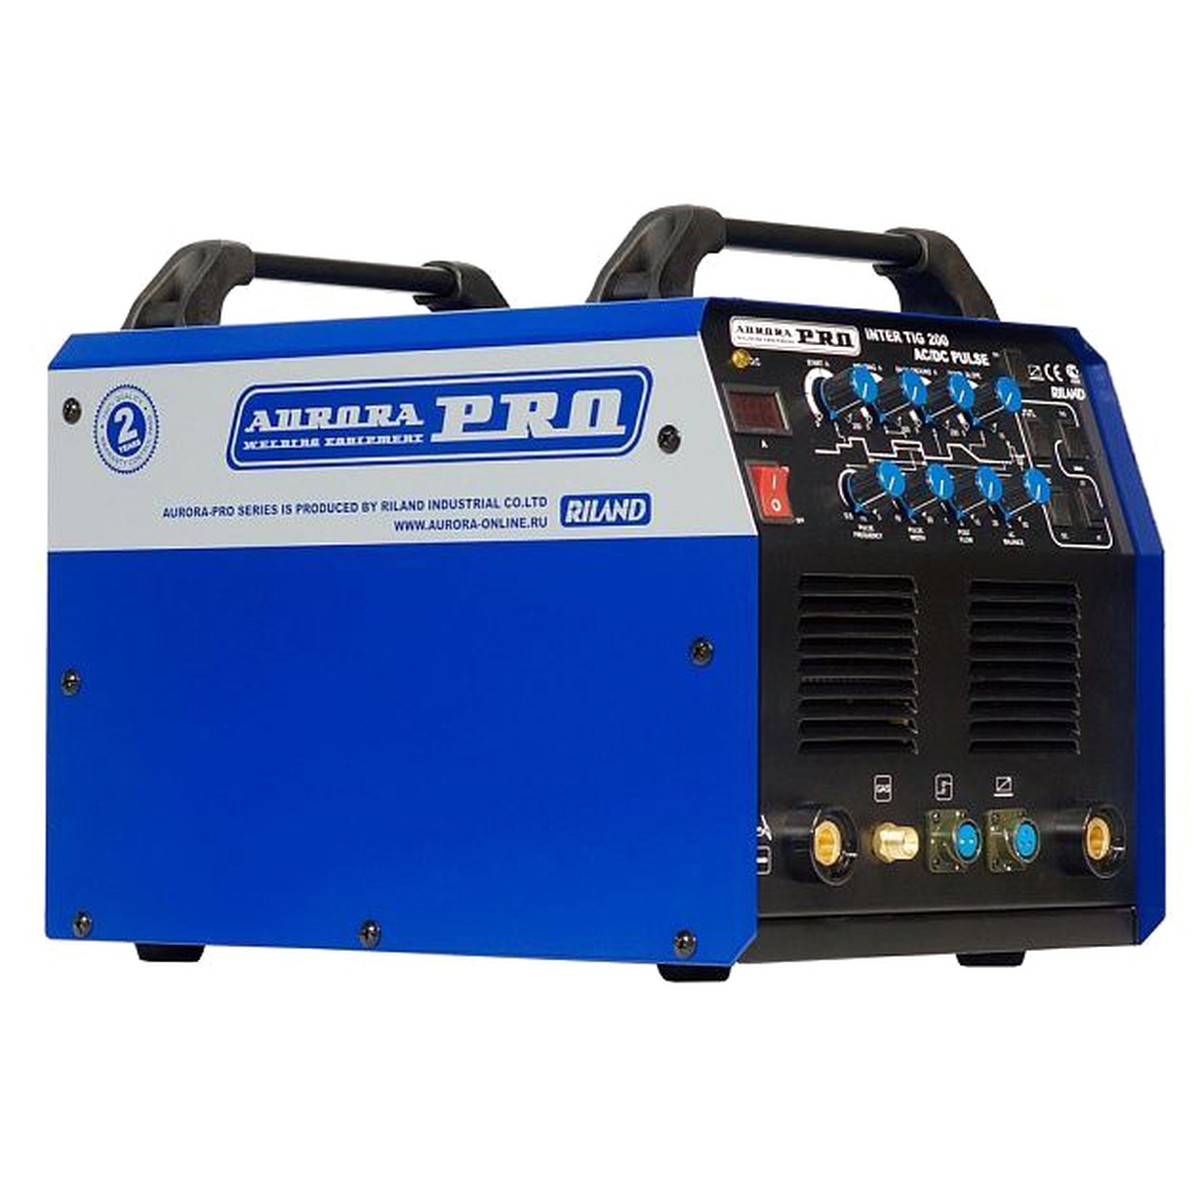 Купить сварочный ac dc tig. Aurora Pro Inter Tig 200 AC/DC Pulse. Aurora Pro Tig 200 AC/DC Pulse. Aurora Inter Tig 200 AC/DC.